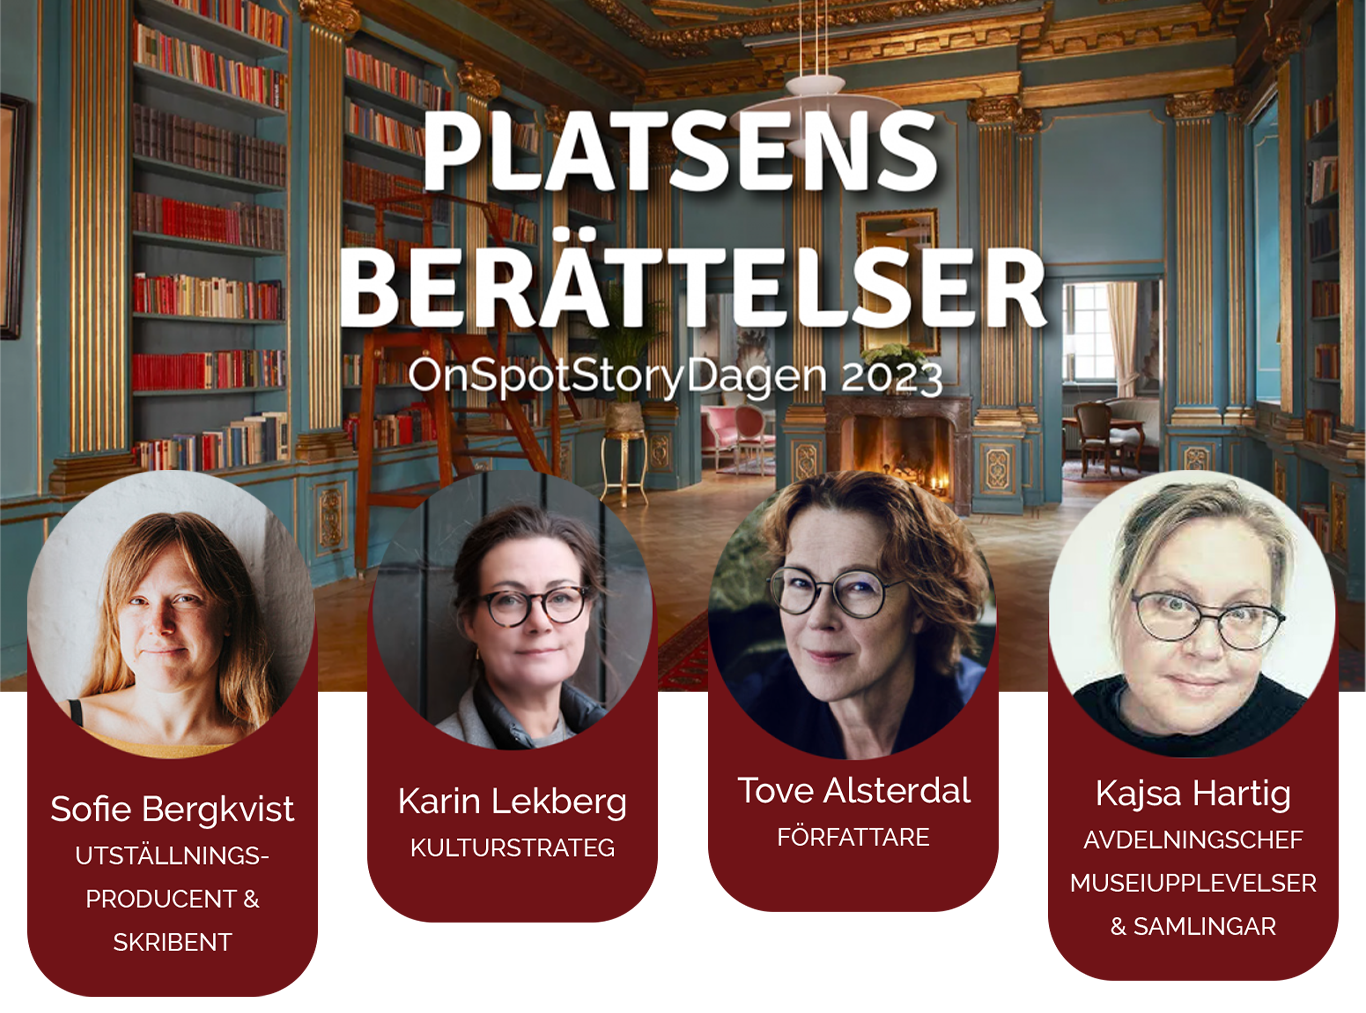 Platsens berättelser, OnSpotStory-Dagen 2023 den 15 mars på van der nootska Palatset. Talare: Sofie Bergkvist, Karin Lekberg, Tove Alsterdal och Kajsa Hartig.